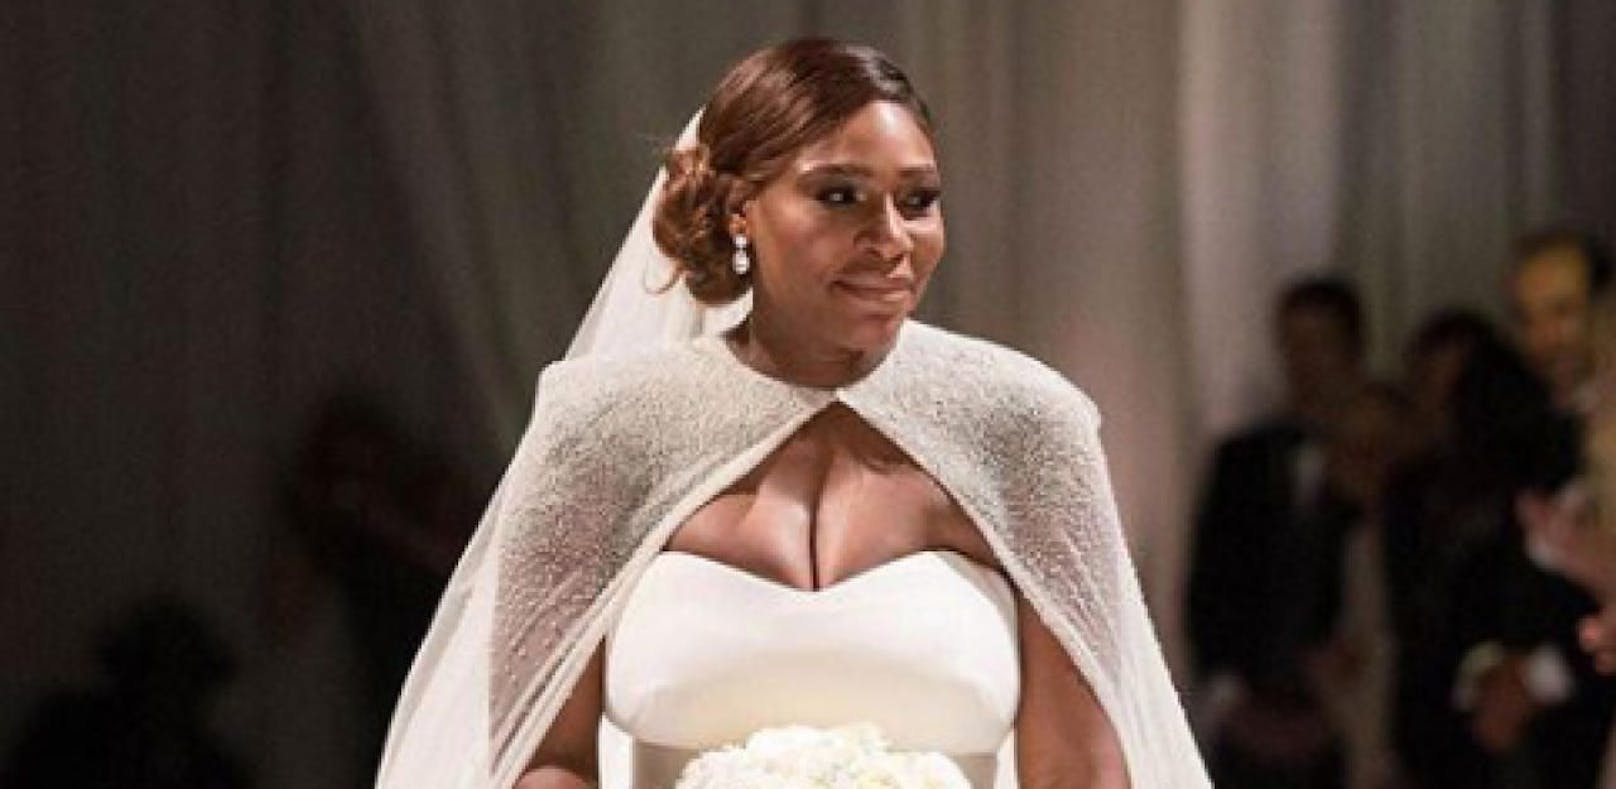 Serena Williams heiratete in drei Traumkleidern